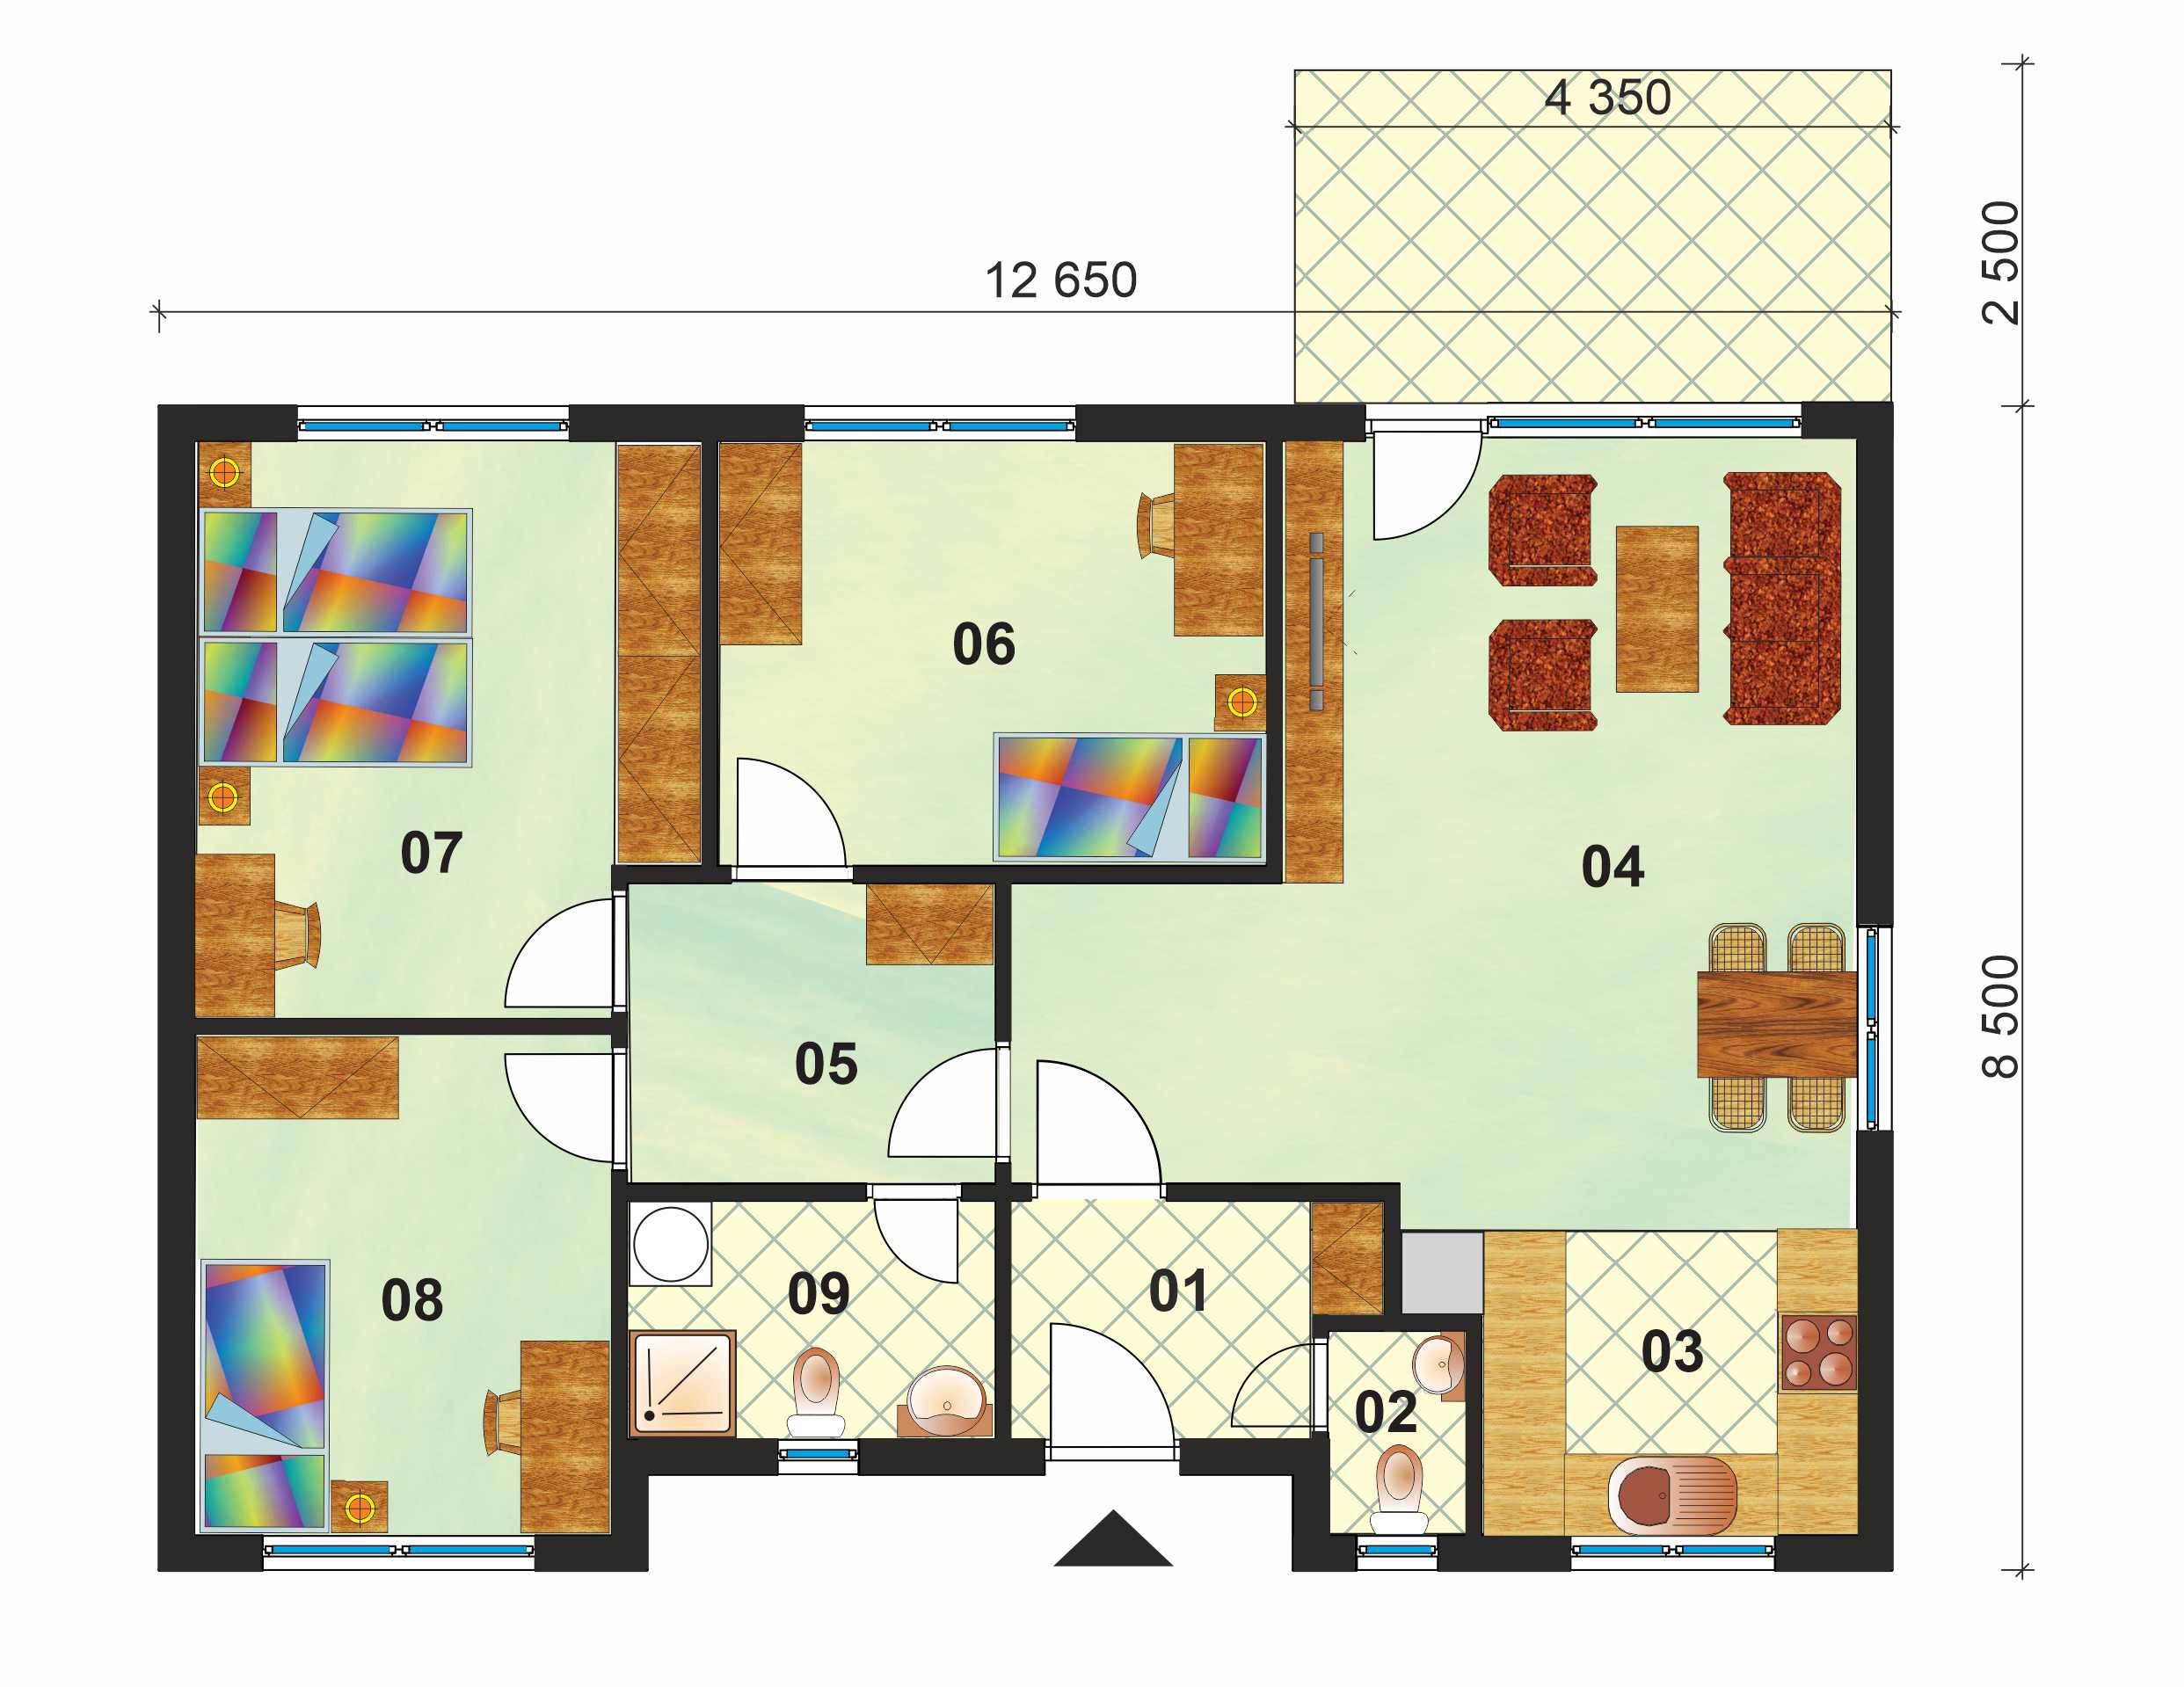 Economic four-room bungalow - no.45, layout 2023